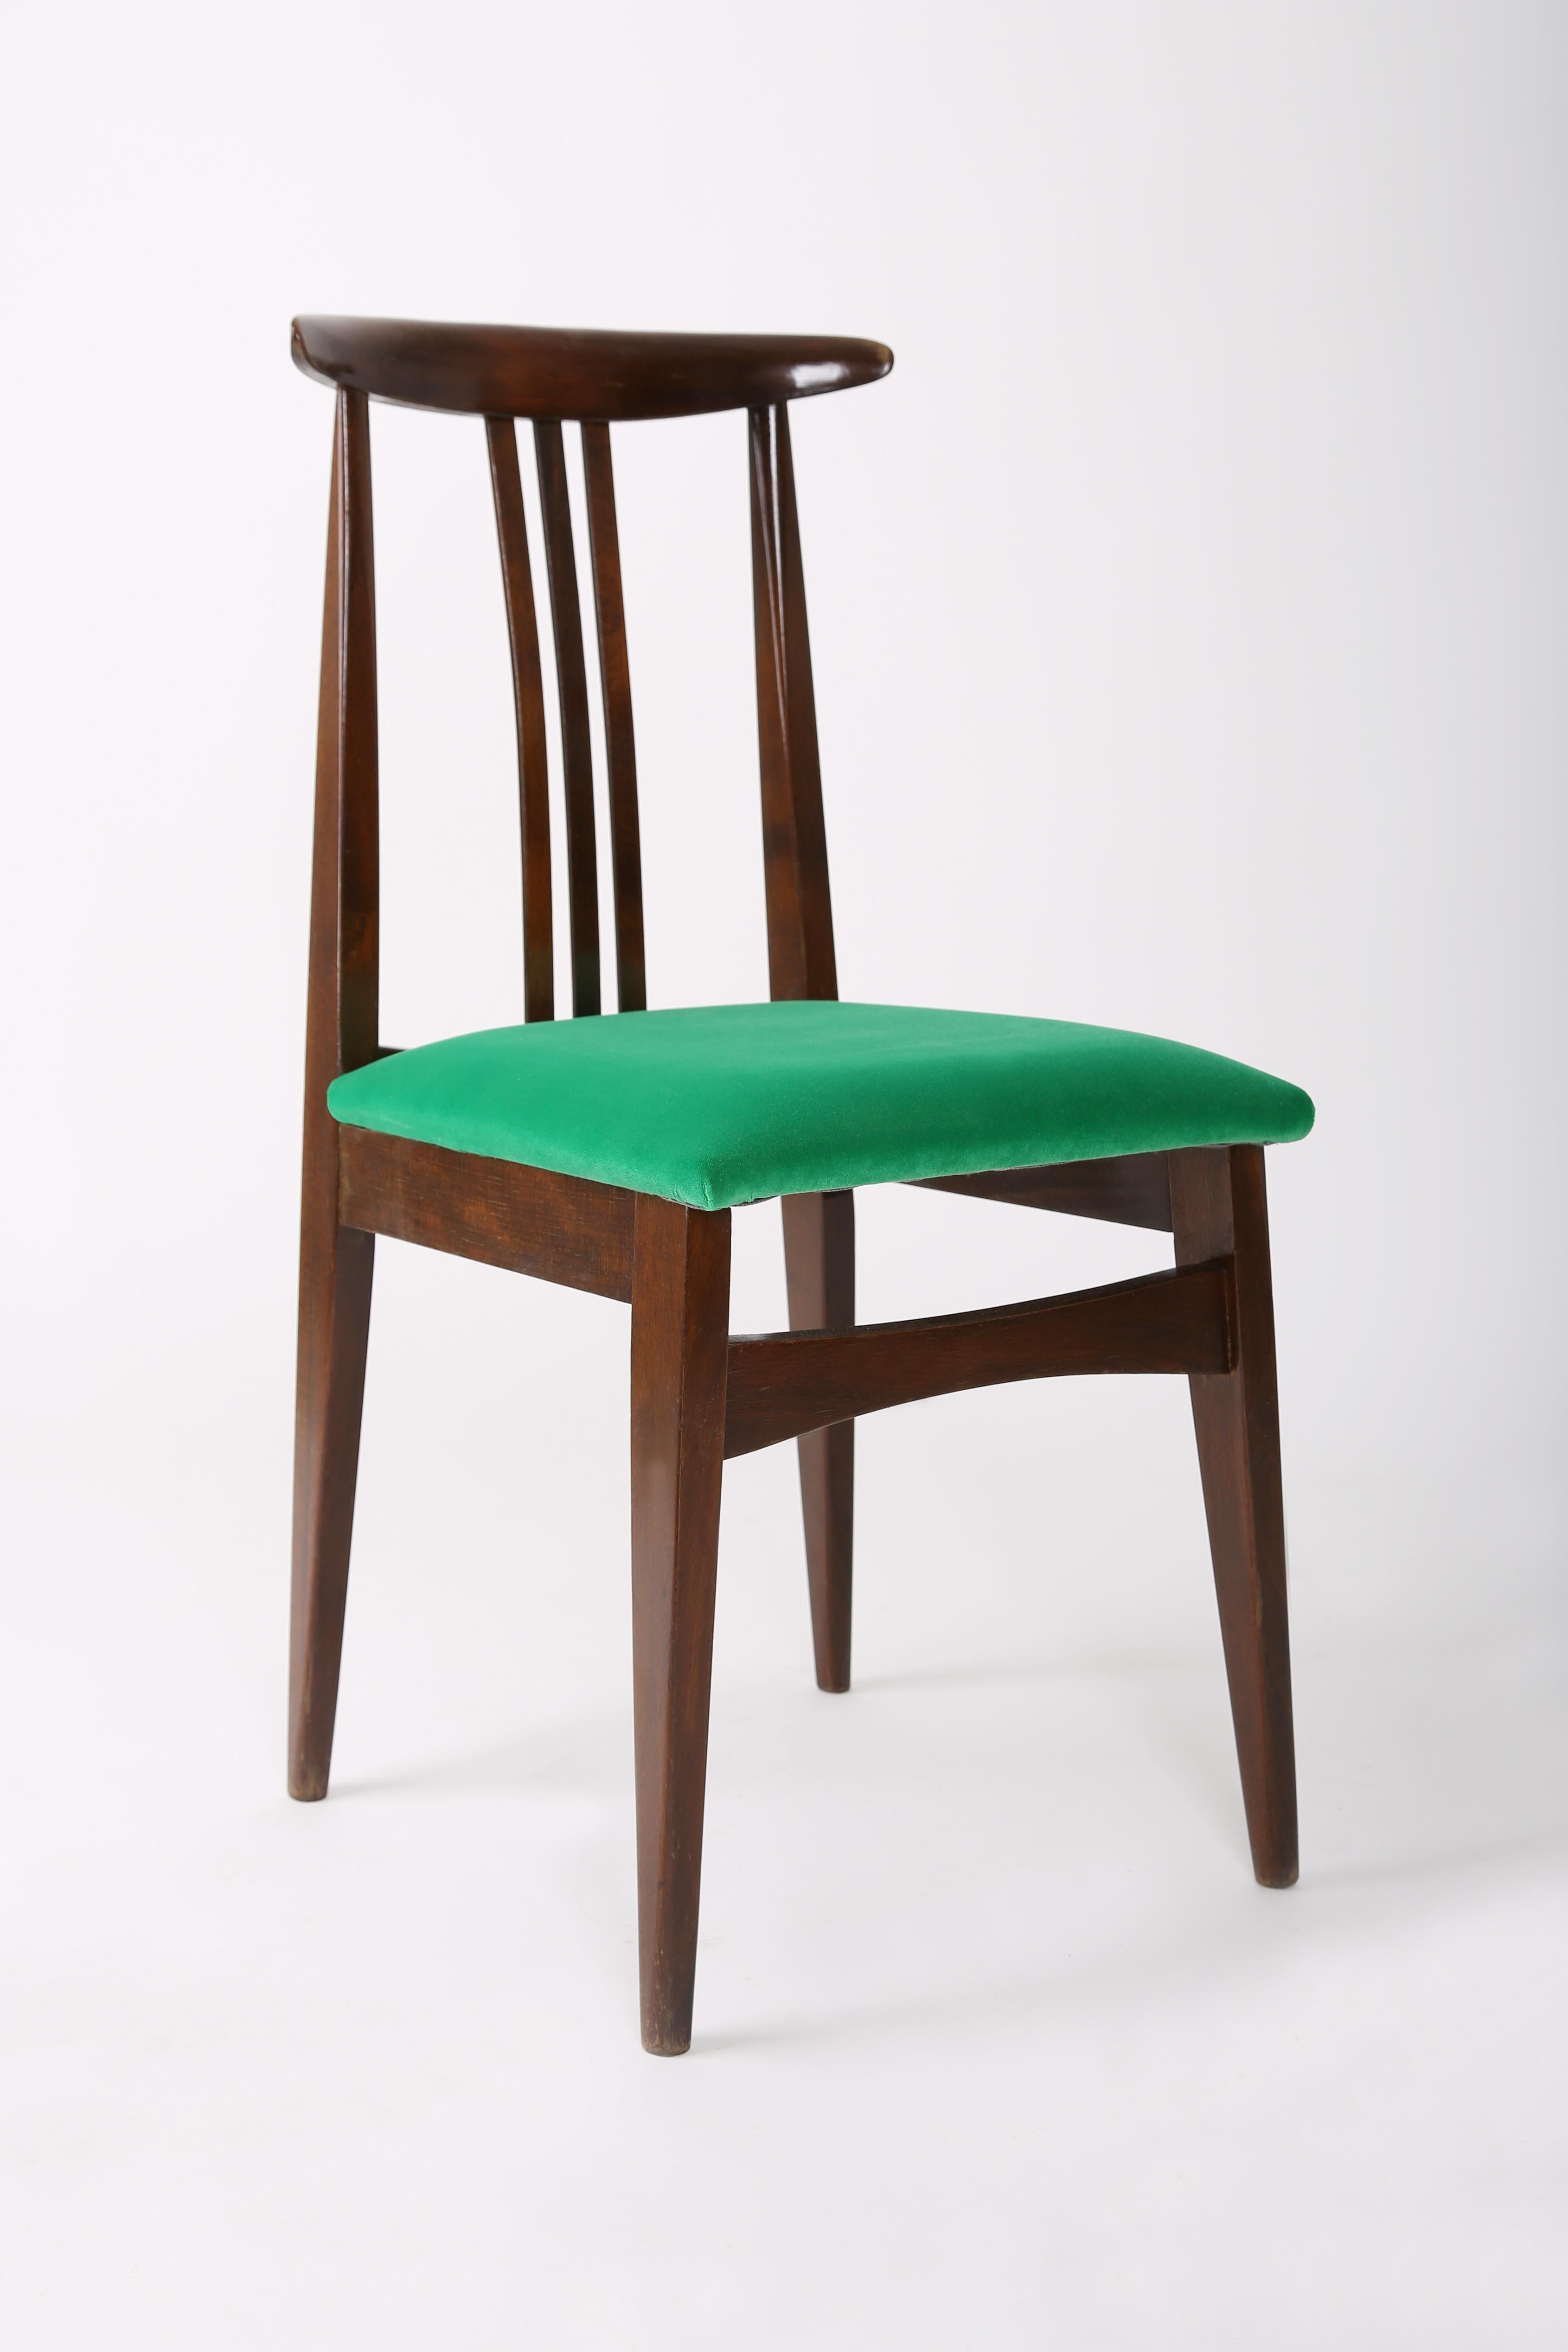 Satz von acht Buchenholzstühlen, entworfen von M. Zielinski, Typ 200 / 100B. Hergestellt vom Opole Furniture Industry Center Ende der 1960er Jahre in Polen. Die Stühle wurden komplett neu geschreinert und gepolstert. Die Sitze sind mit hochwertigem